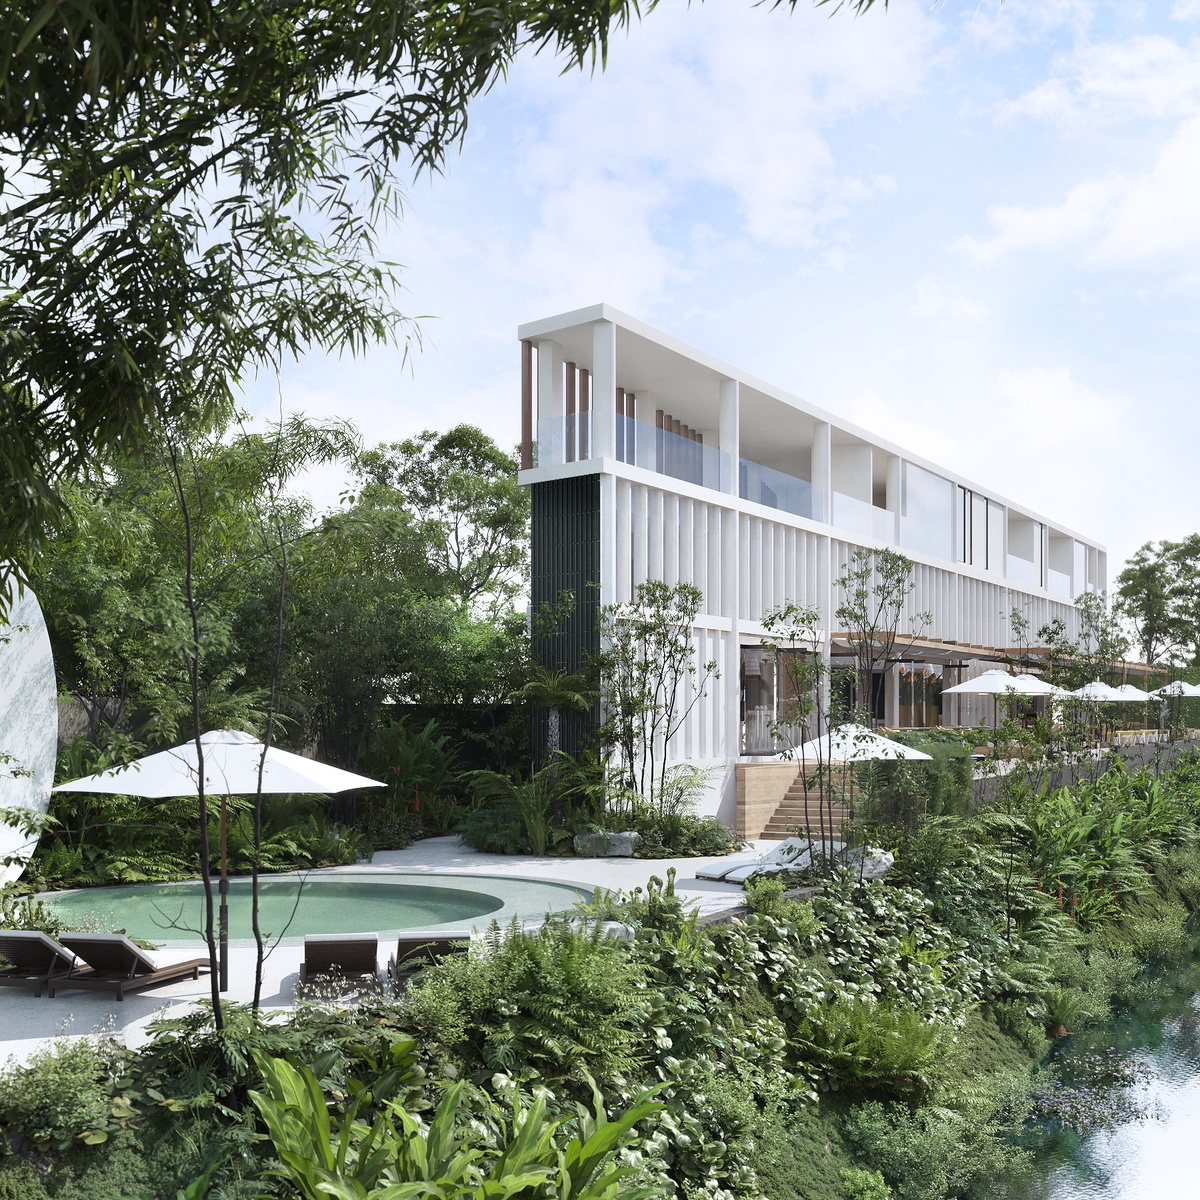 ออสโม่ พร็อพเพอร์ตี้ส์ กรุ๊ป ส่ง ออสโม่ พิงค์ ริเวอร์ ในเครือ ลงนามแต่งตั้งการบริหาร โรงแรม NH Collection Chiang Mai Ping River ริมแม่น้ำปิง จังหวัดเชียงใหม่ ร่วมกับ ไมเนอร์ โฮเทลส์